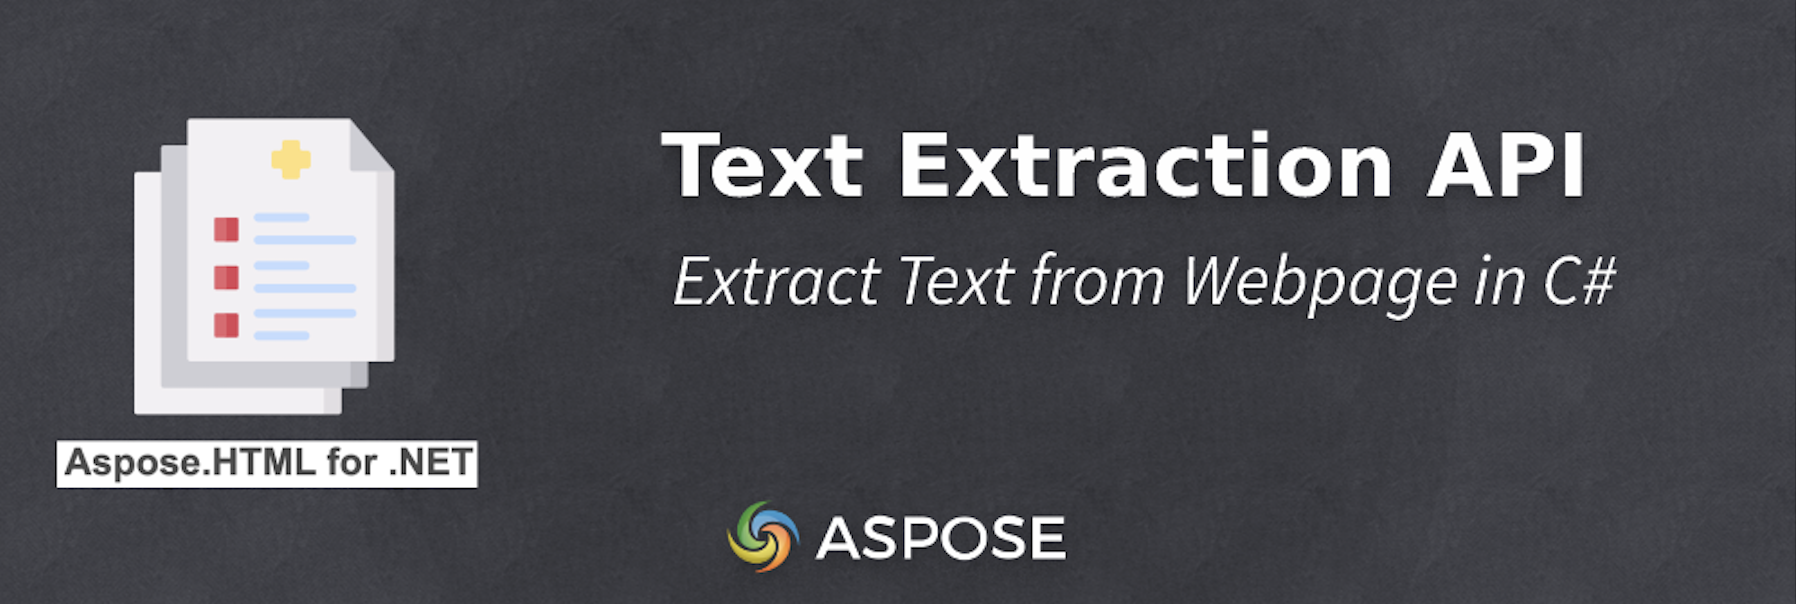 Extraer texto de una página web en C#: API de extracción de texto